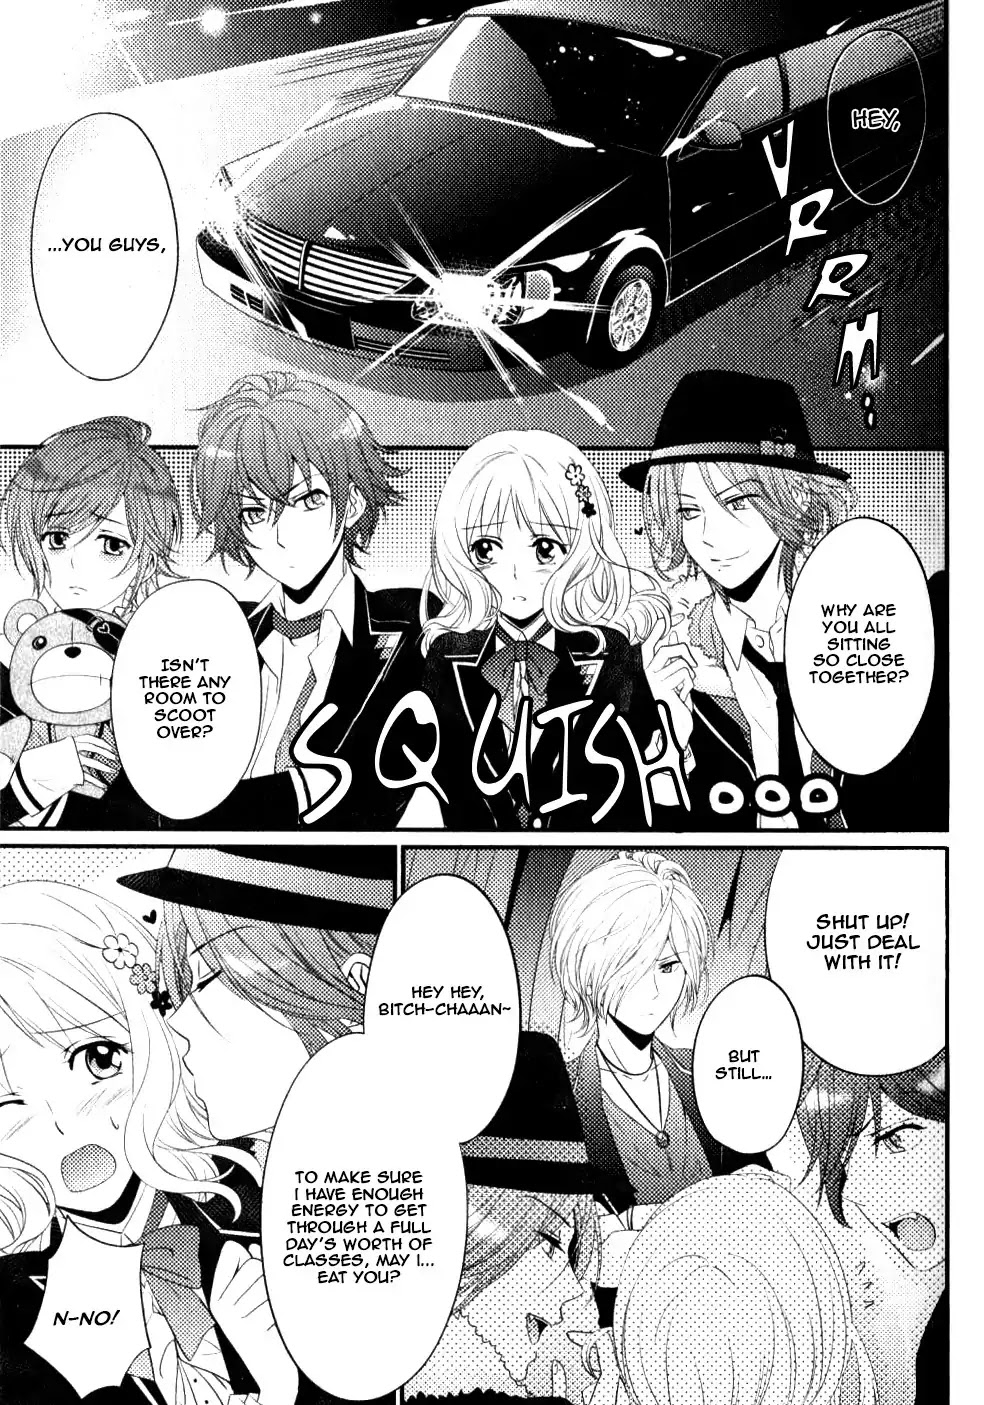 Diabolik Lovers: Sequel - Ayato, Laito, Subaru Arc - Page 2